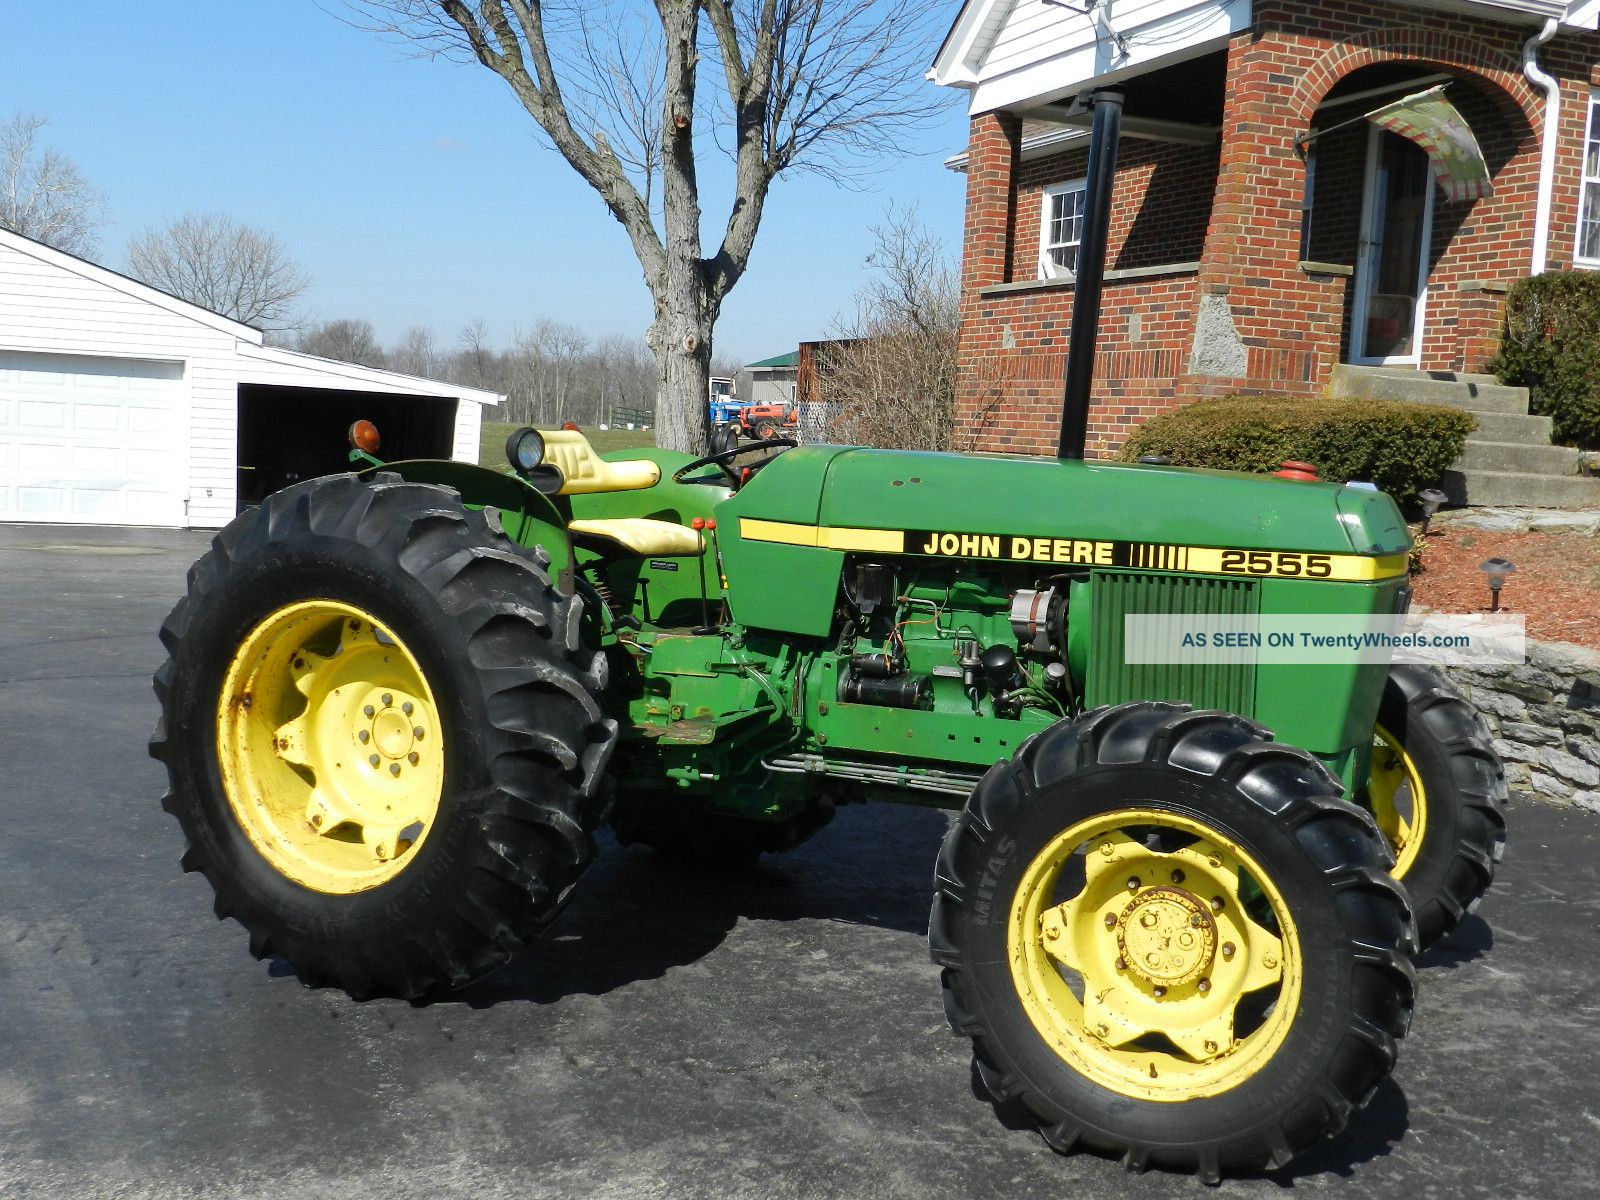 John Deere 2555 Tractor - 4x4 - With